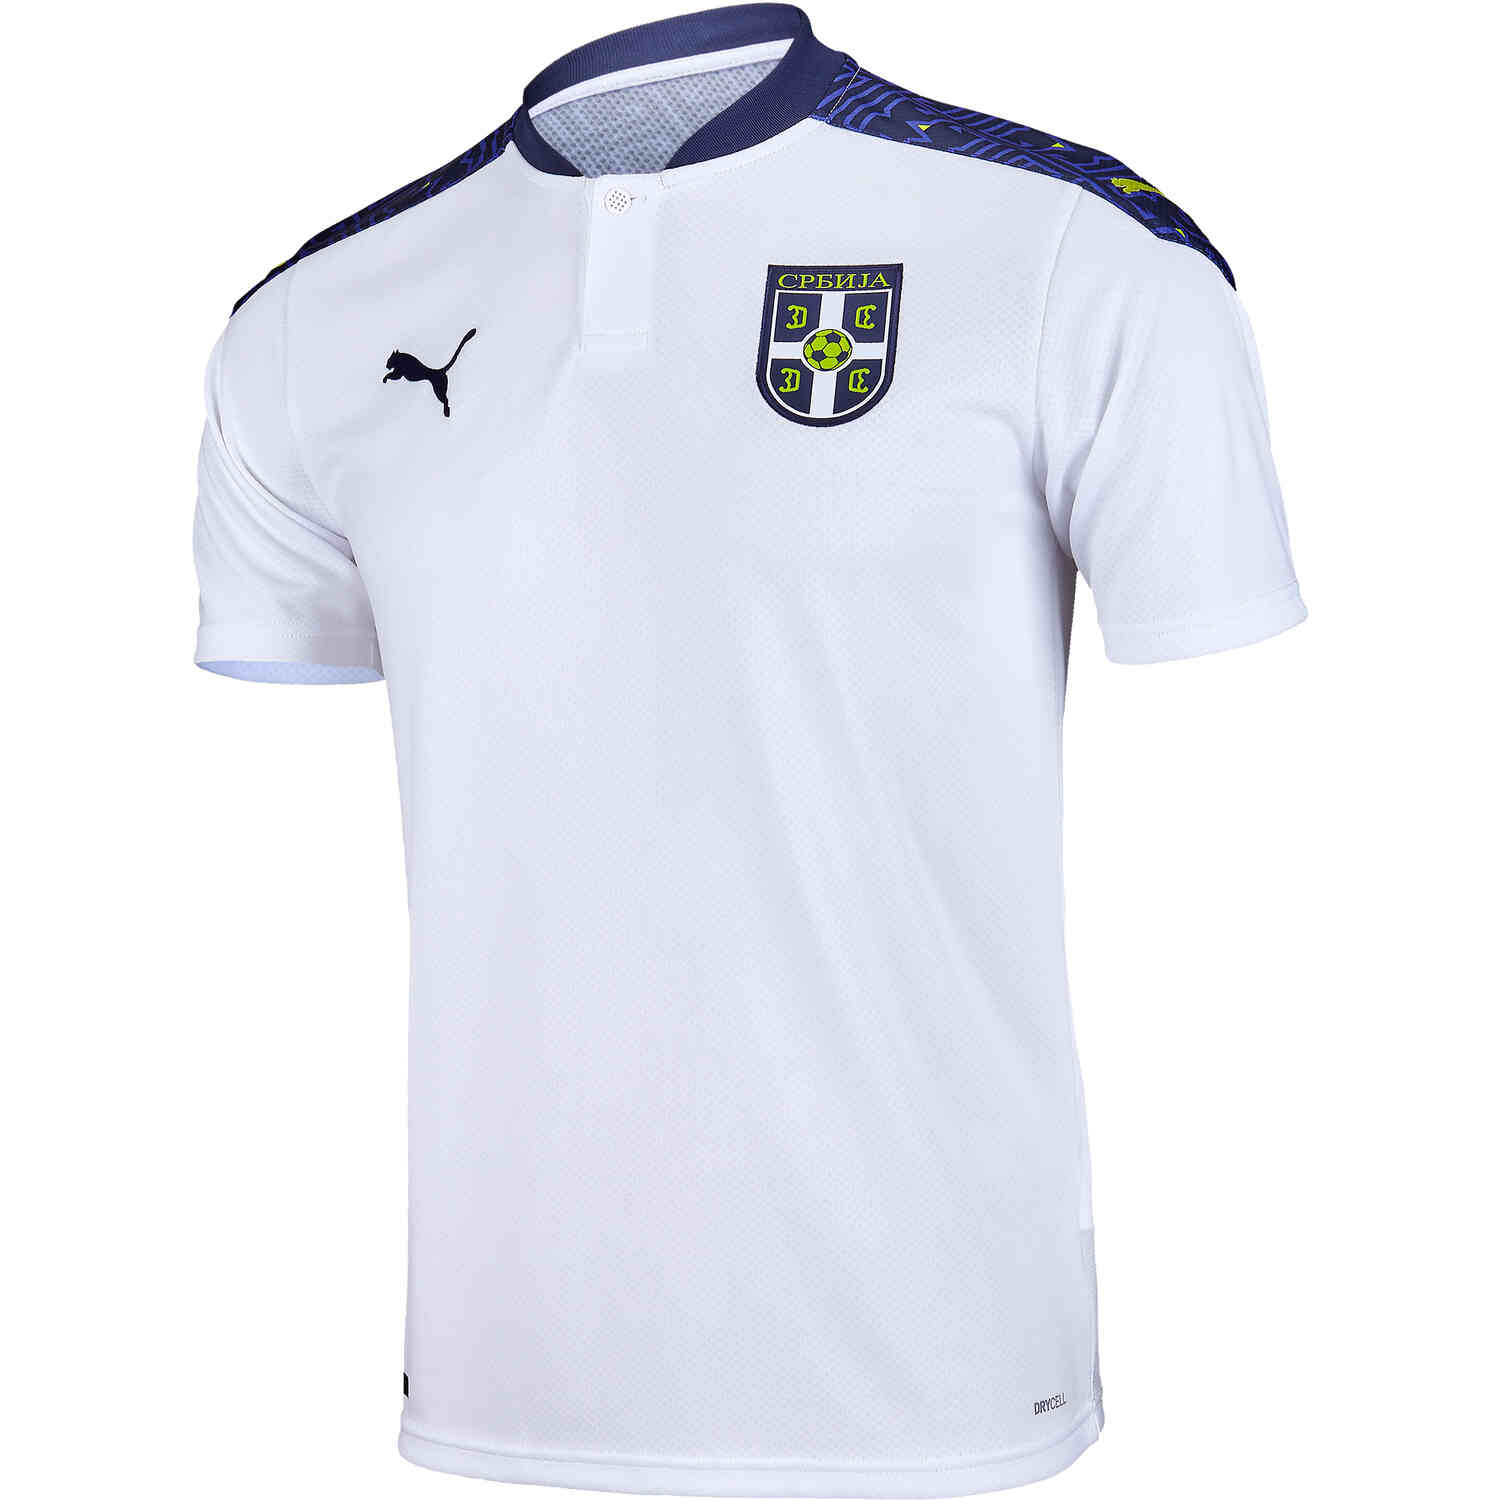 Serbian Soccer Jerseys Fast Shipping SoccerPro.com